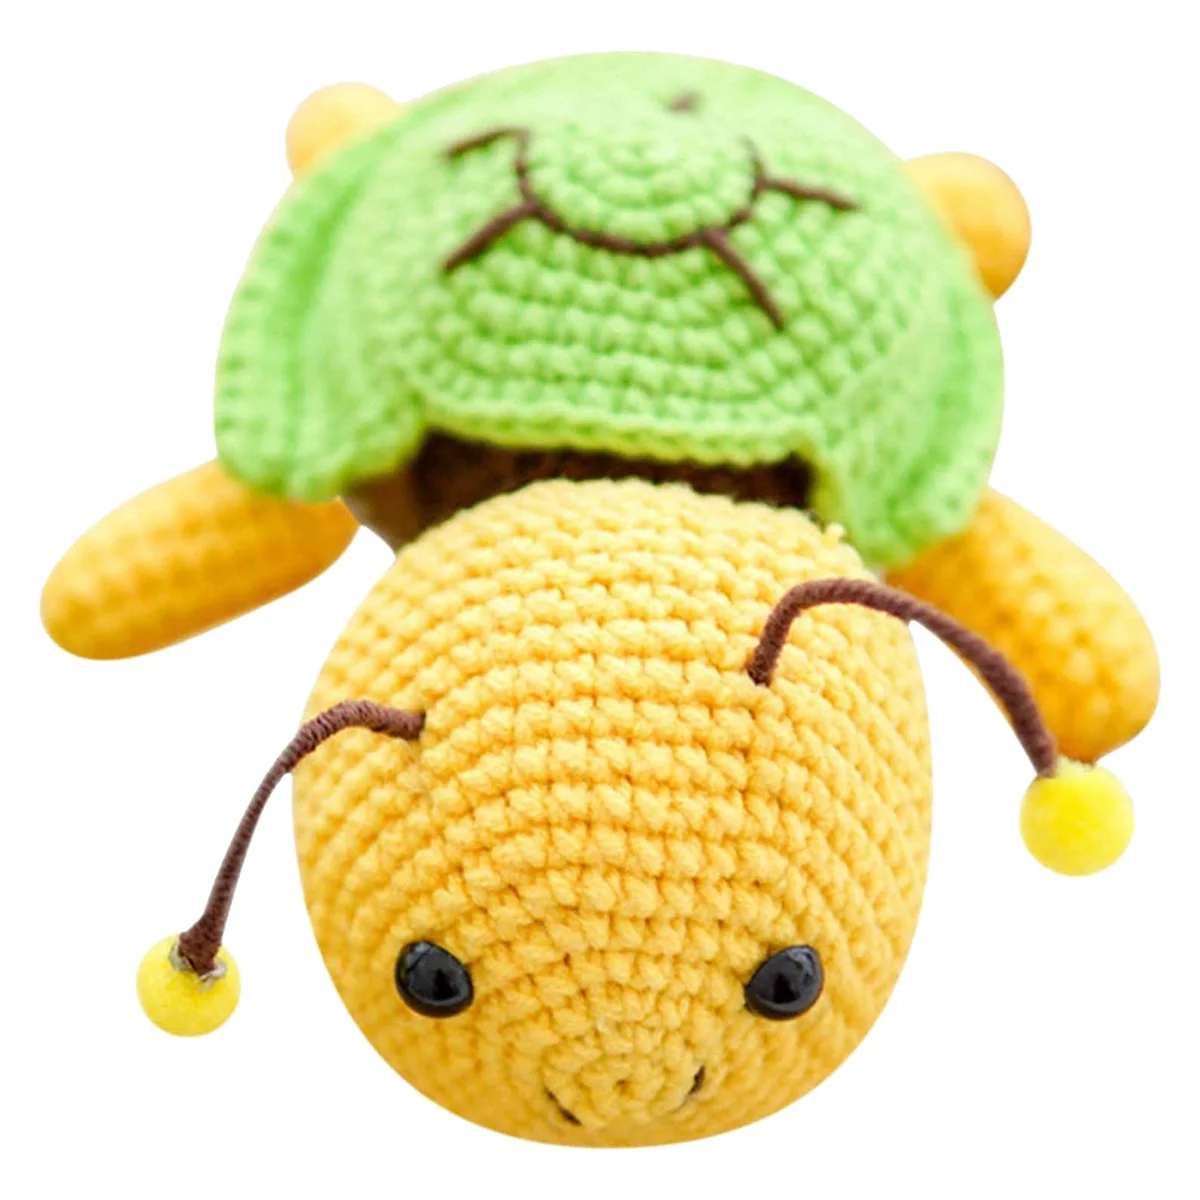 

Crochet Kit for Beginners - Turtle Bee Crochet Kit DIY and Complete Crochet Kit for Beginners,(Yellow)